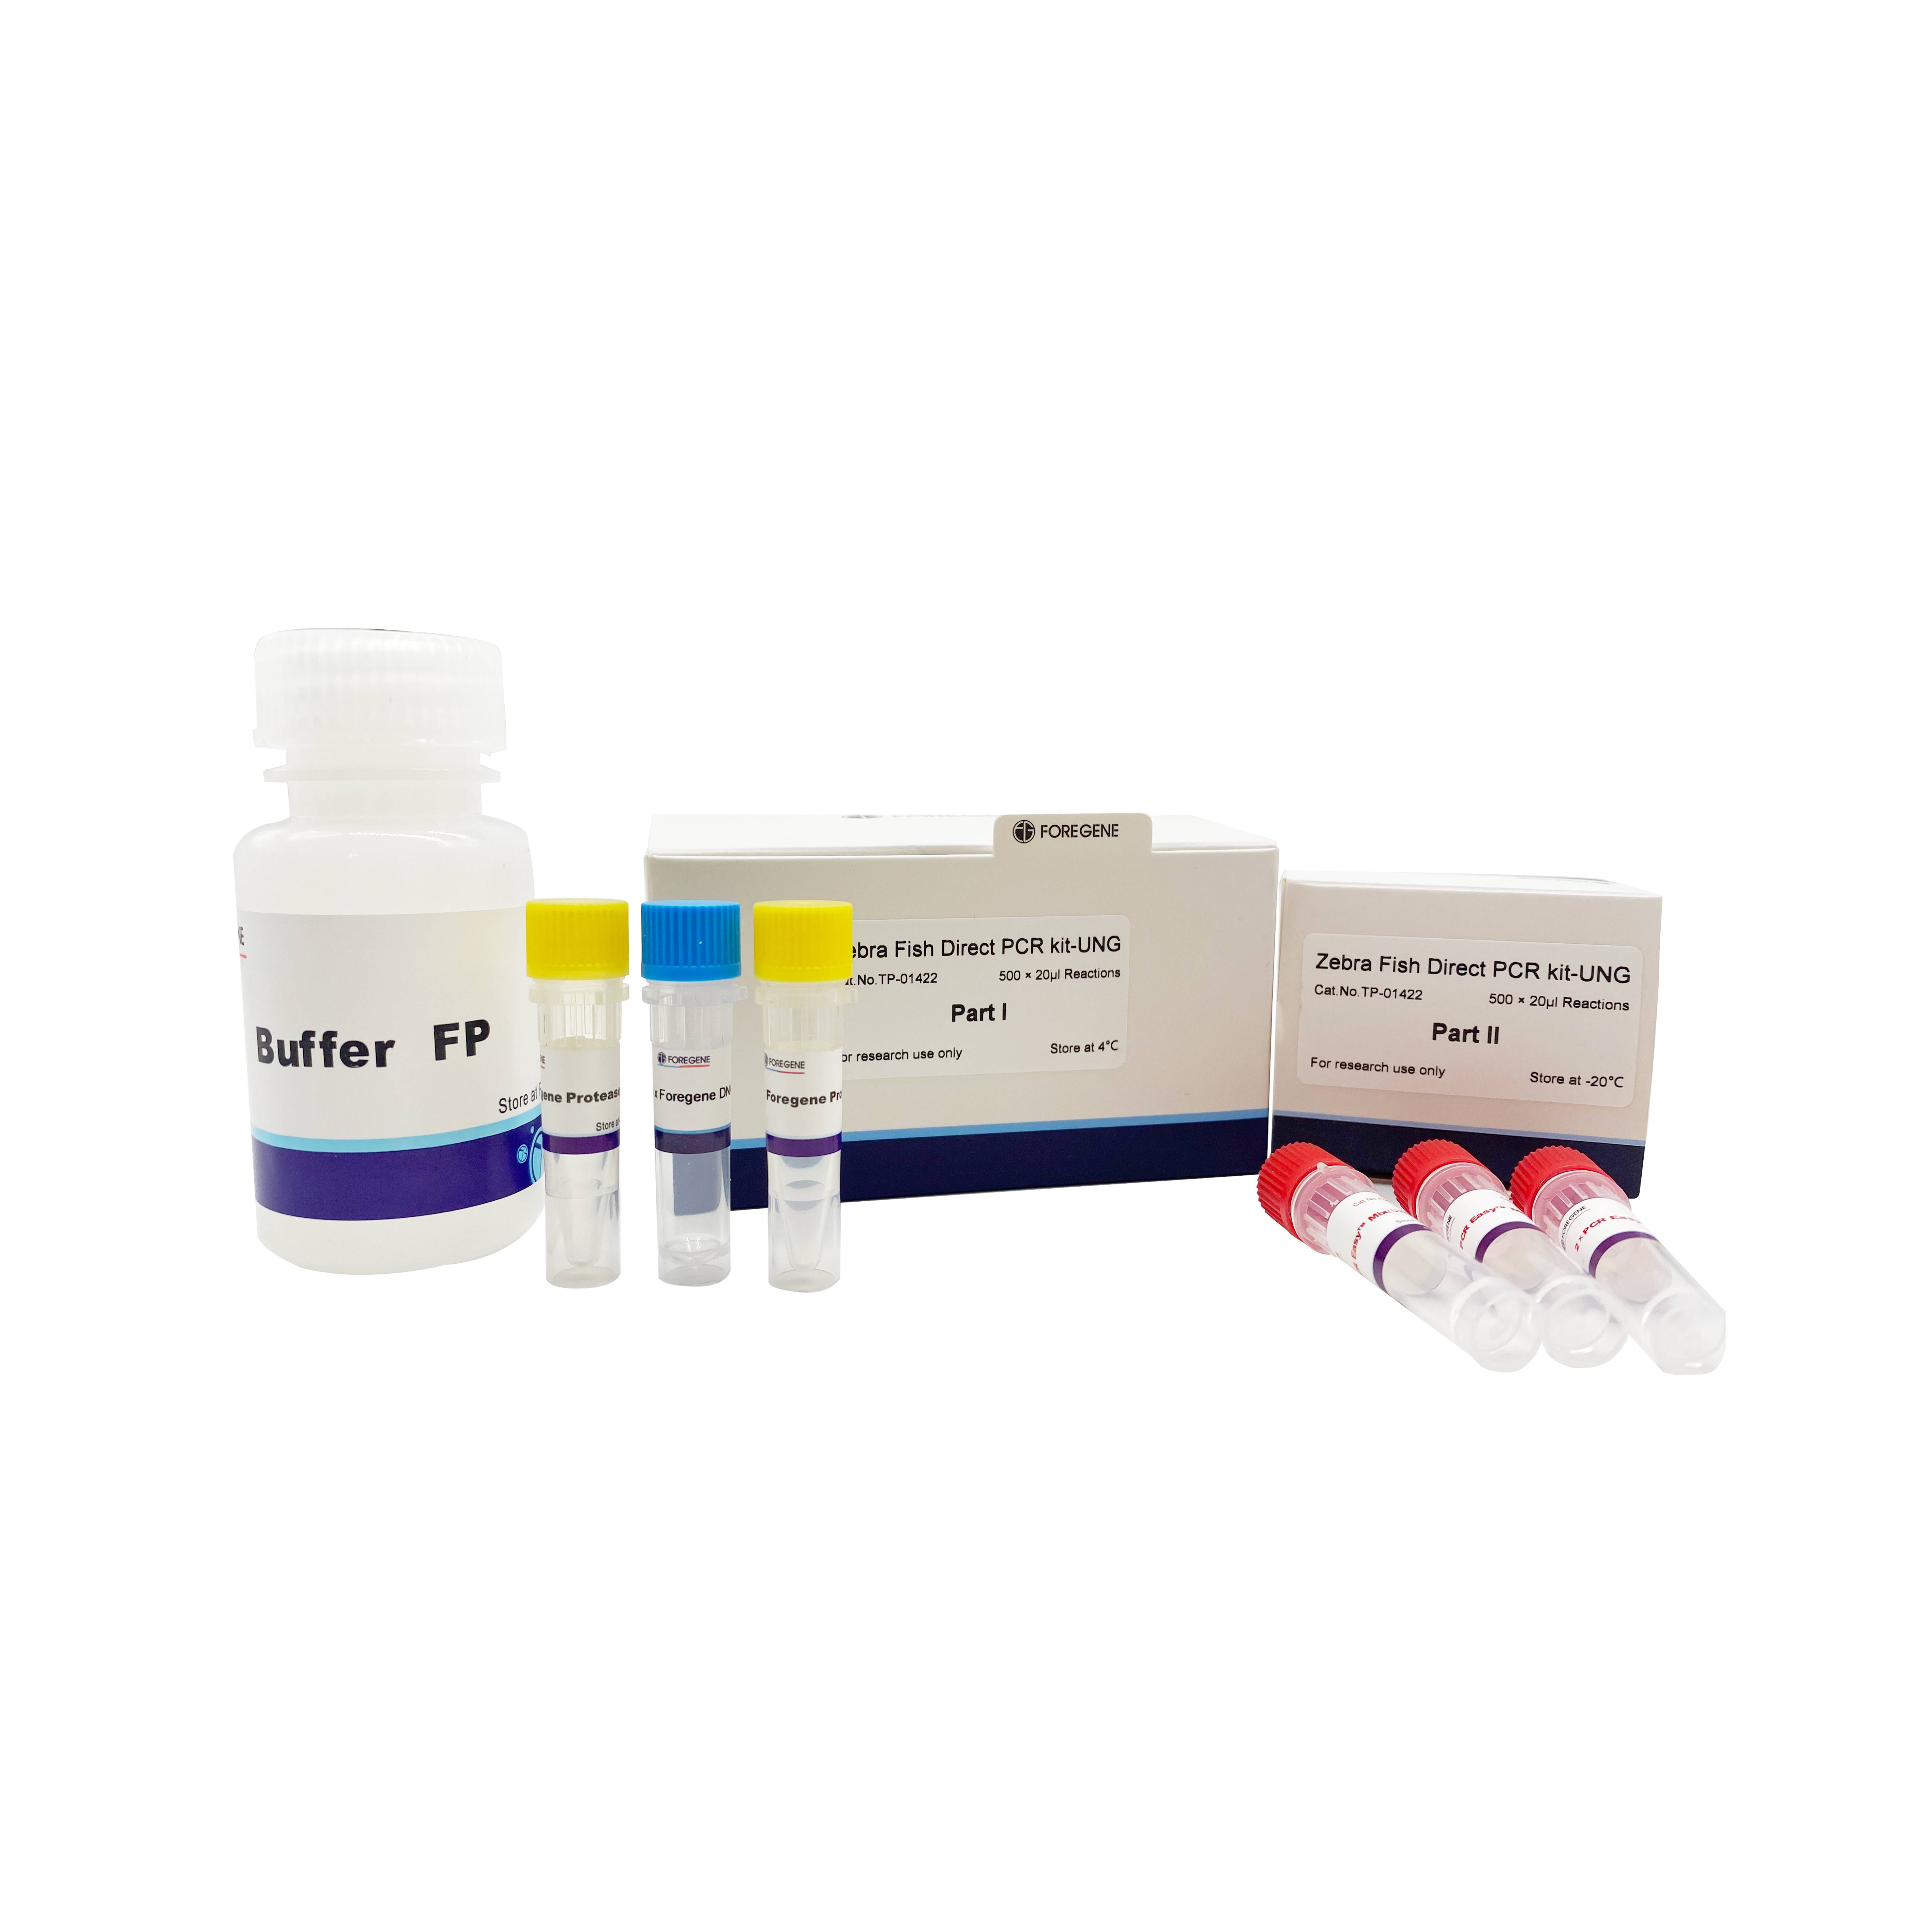 Zebra balyk göni PCR kit-UNG göni PCR liz reagenti (zebrafiş)